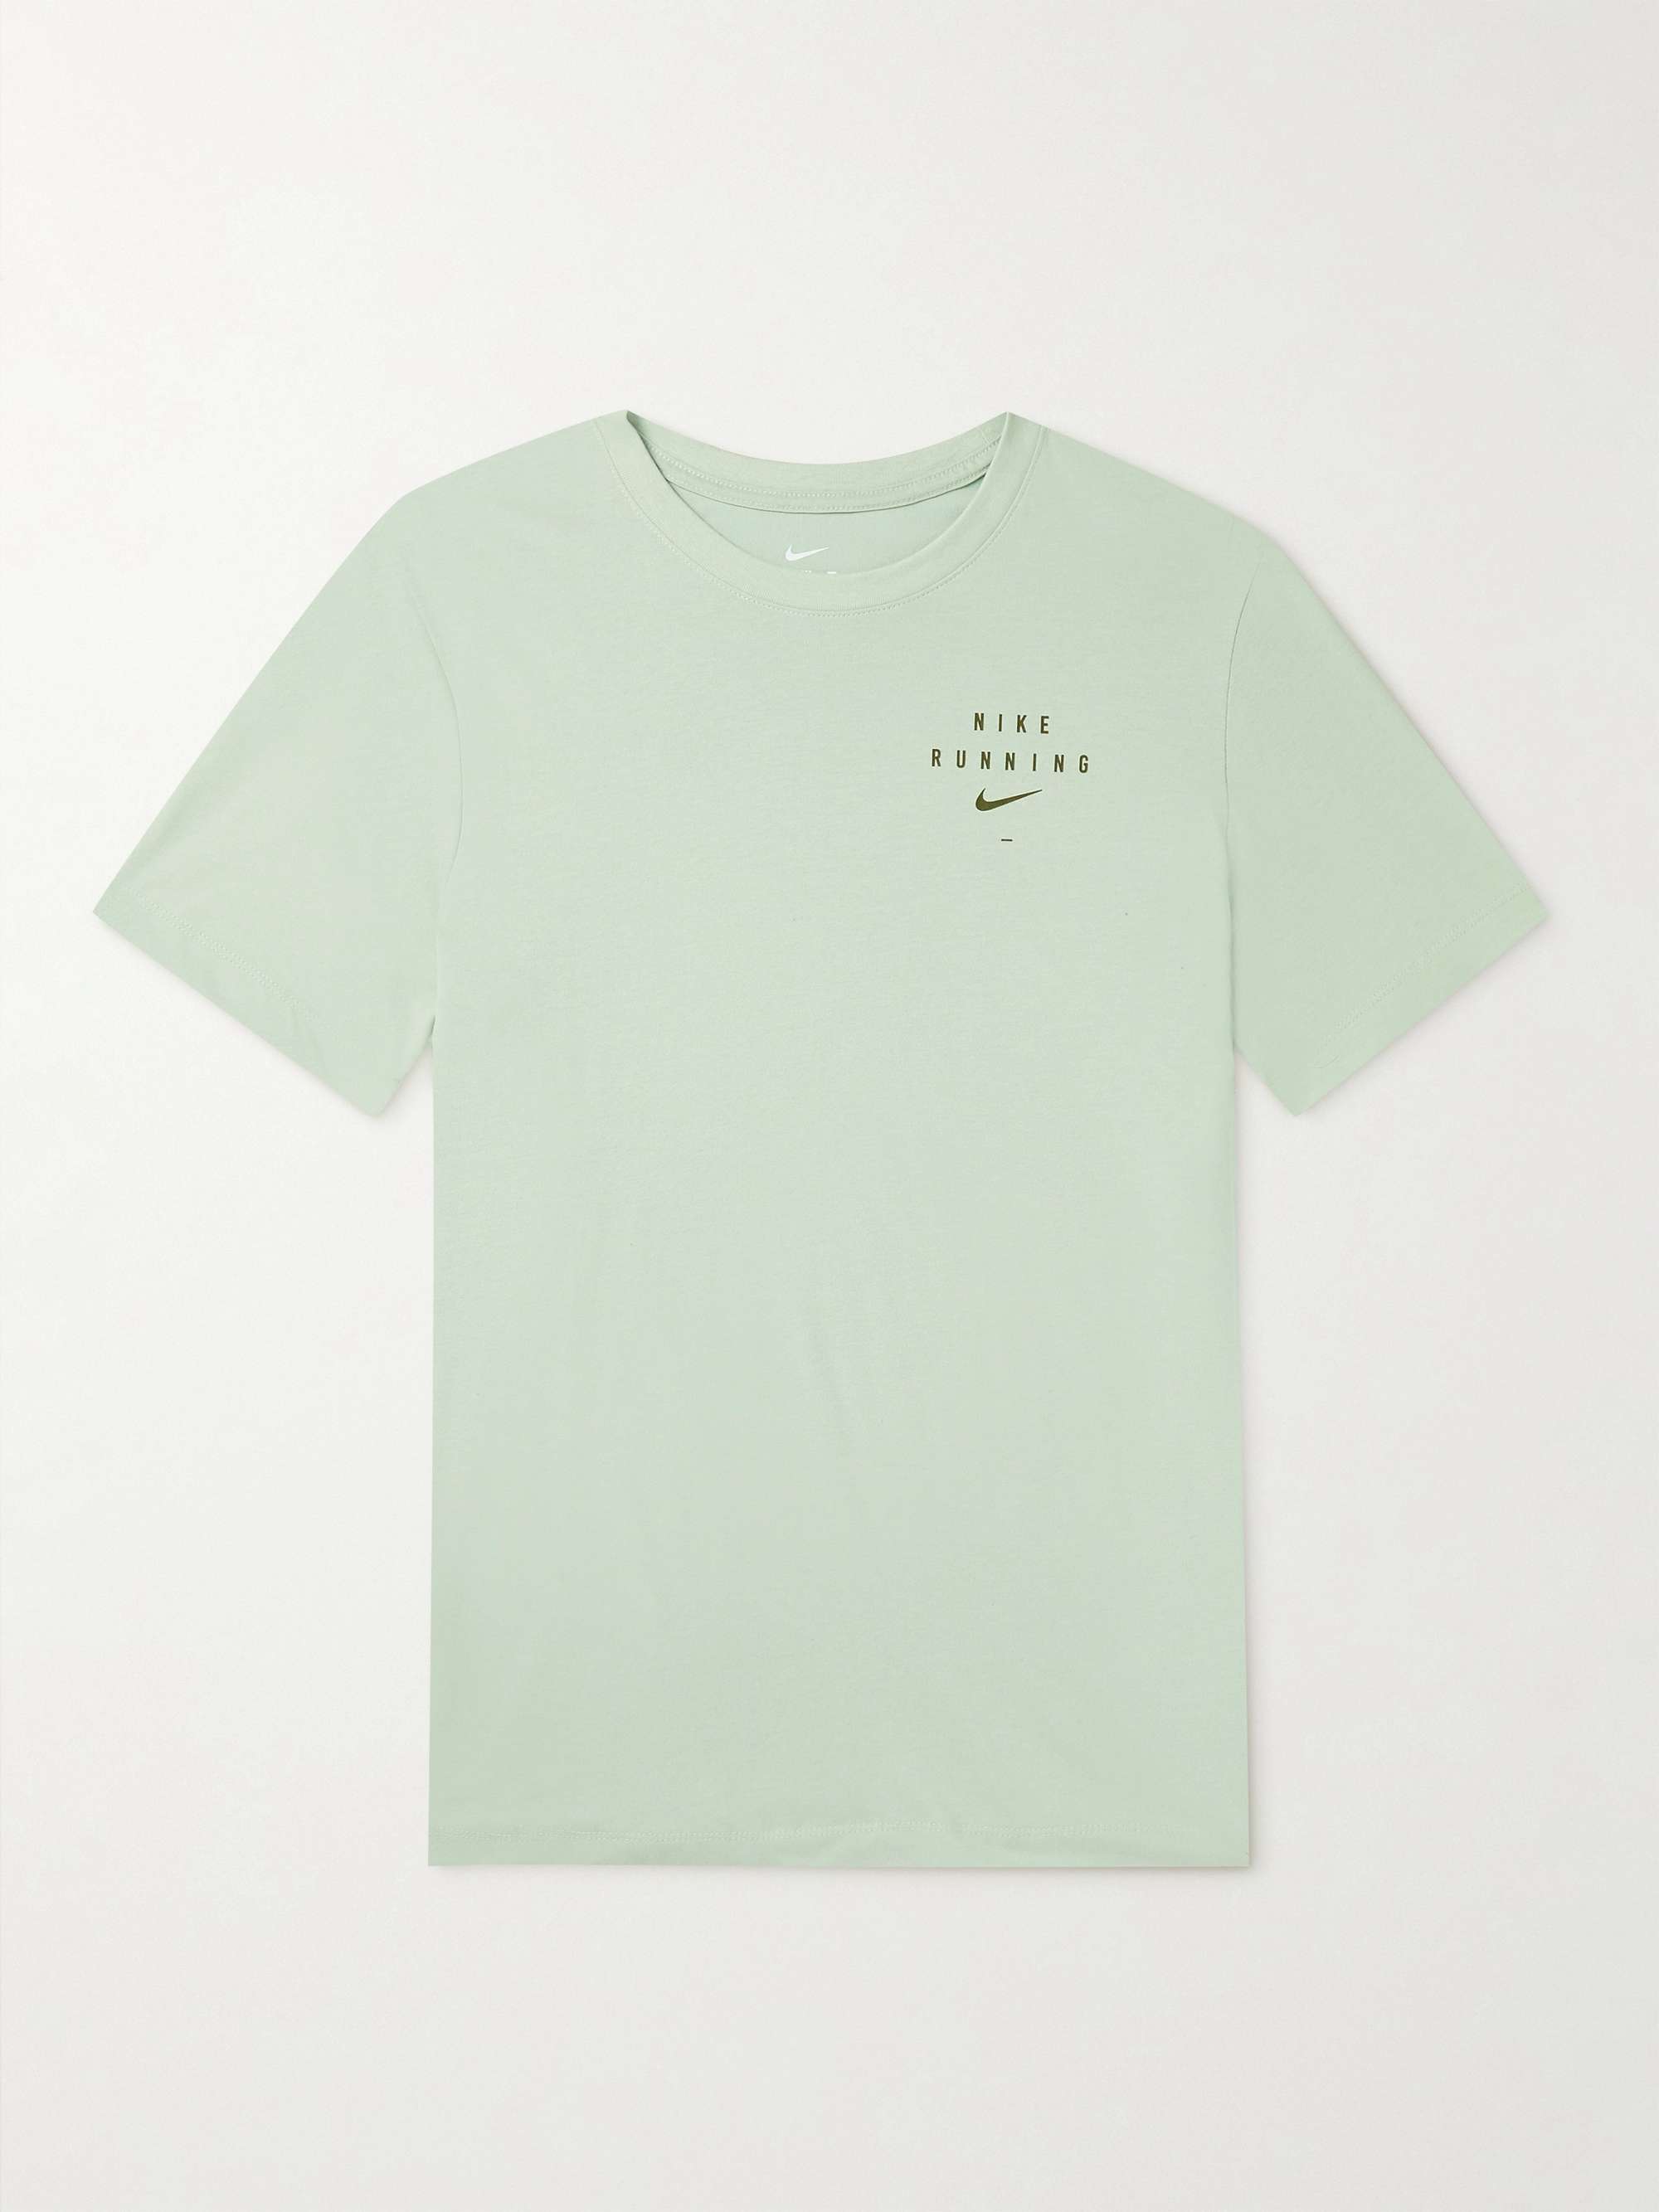 NIKE RUNNING Logo-Print Cotton-Blend Jersey T-Shirt